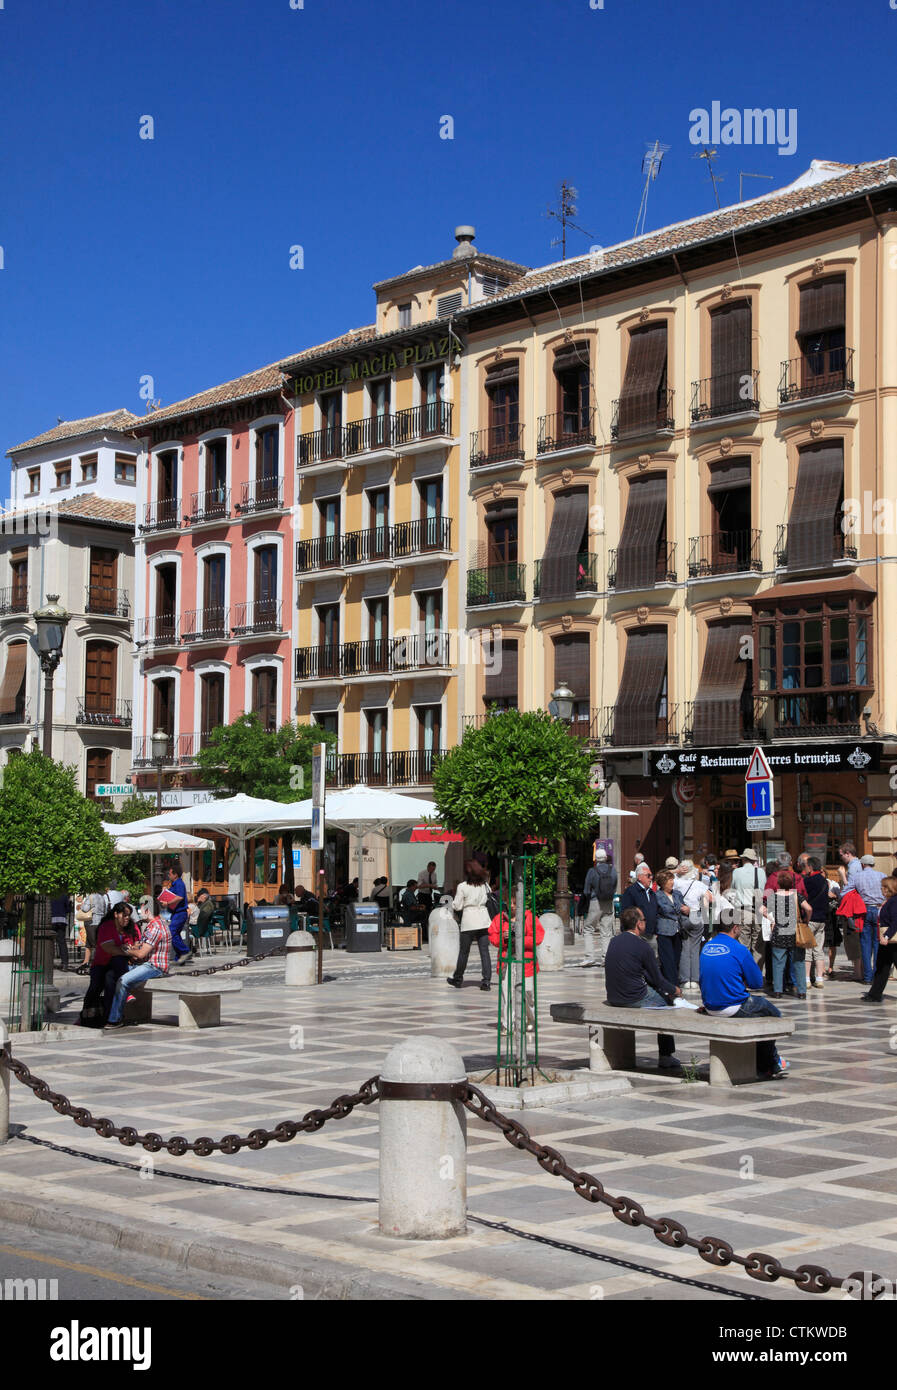 Spain, Andalusia, Granada, Plaza Nueva, Stock Photo